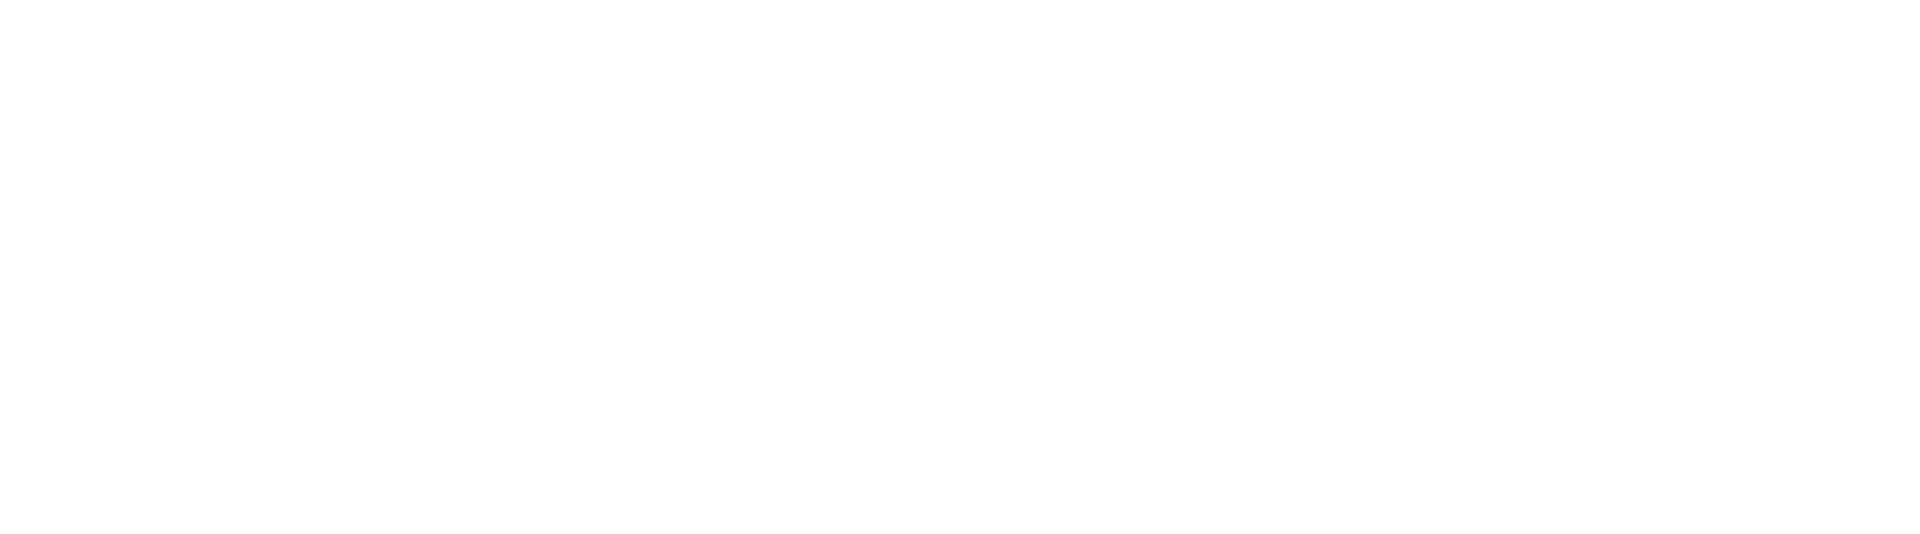 slowenien-hochzeit-logo